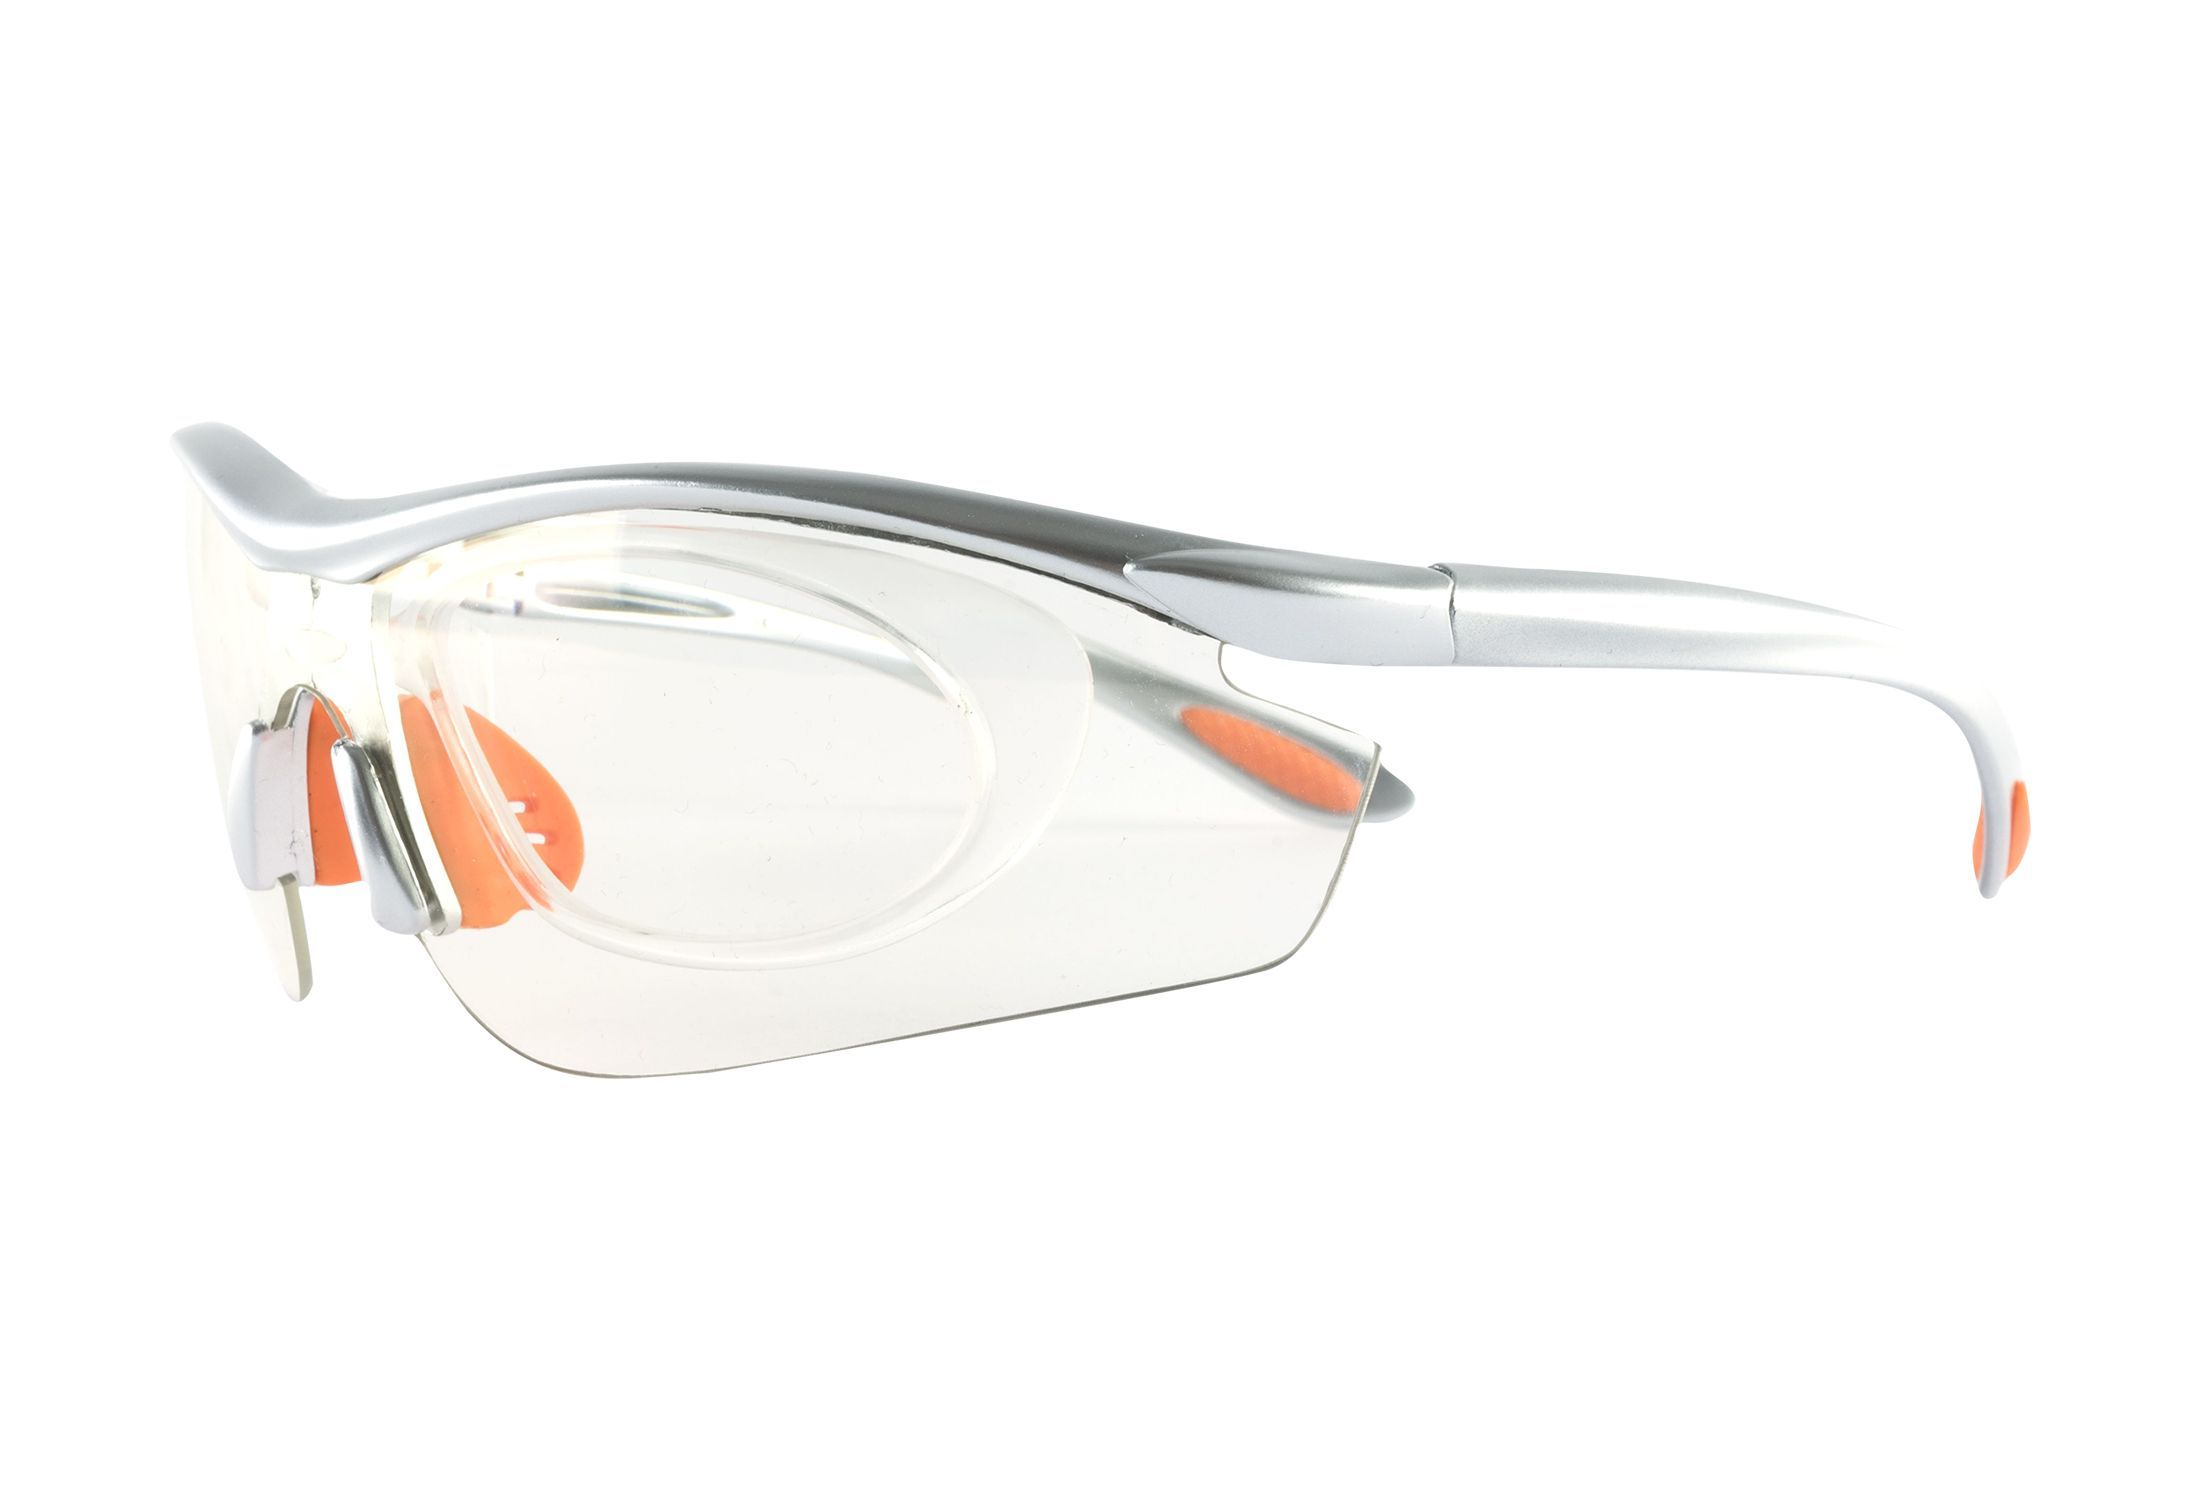 Vernebriller med styrke fra eo Protect - Giselle - Sølv